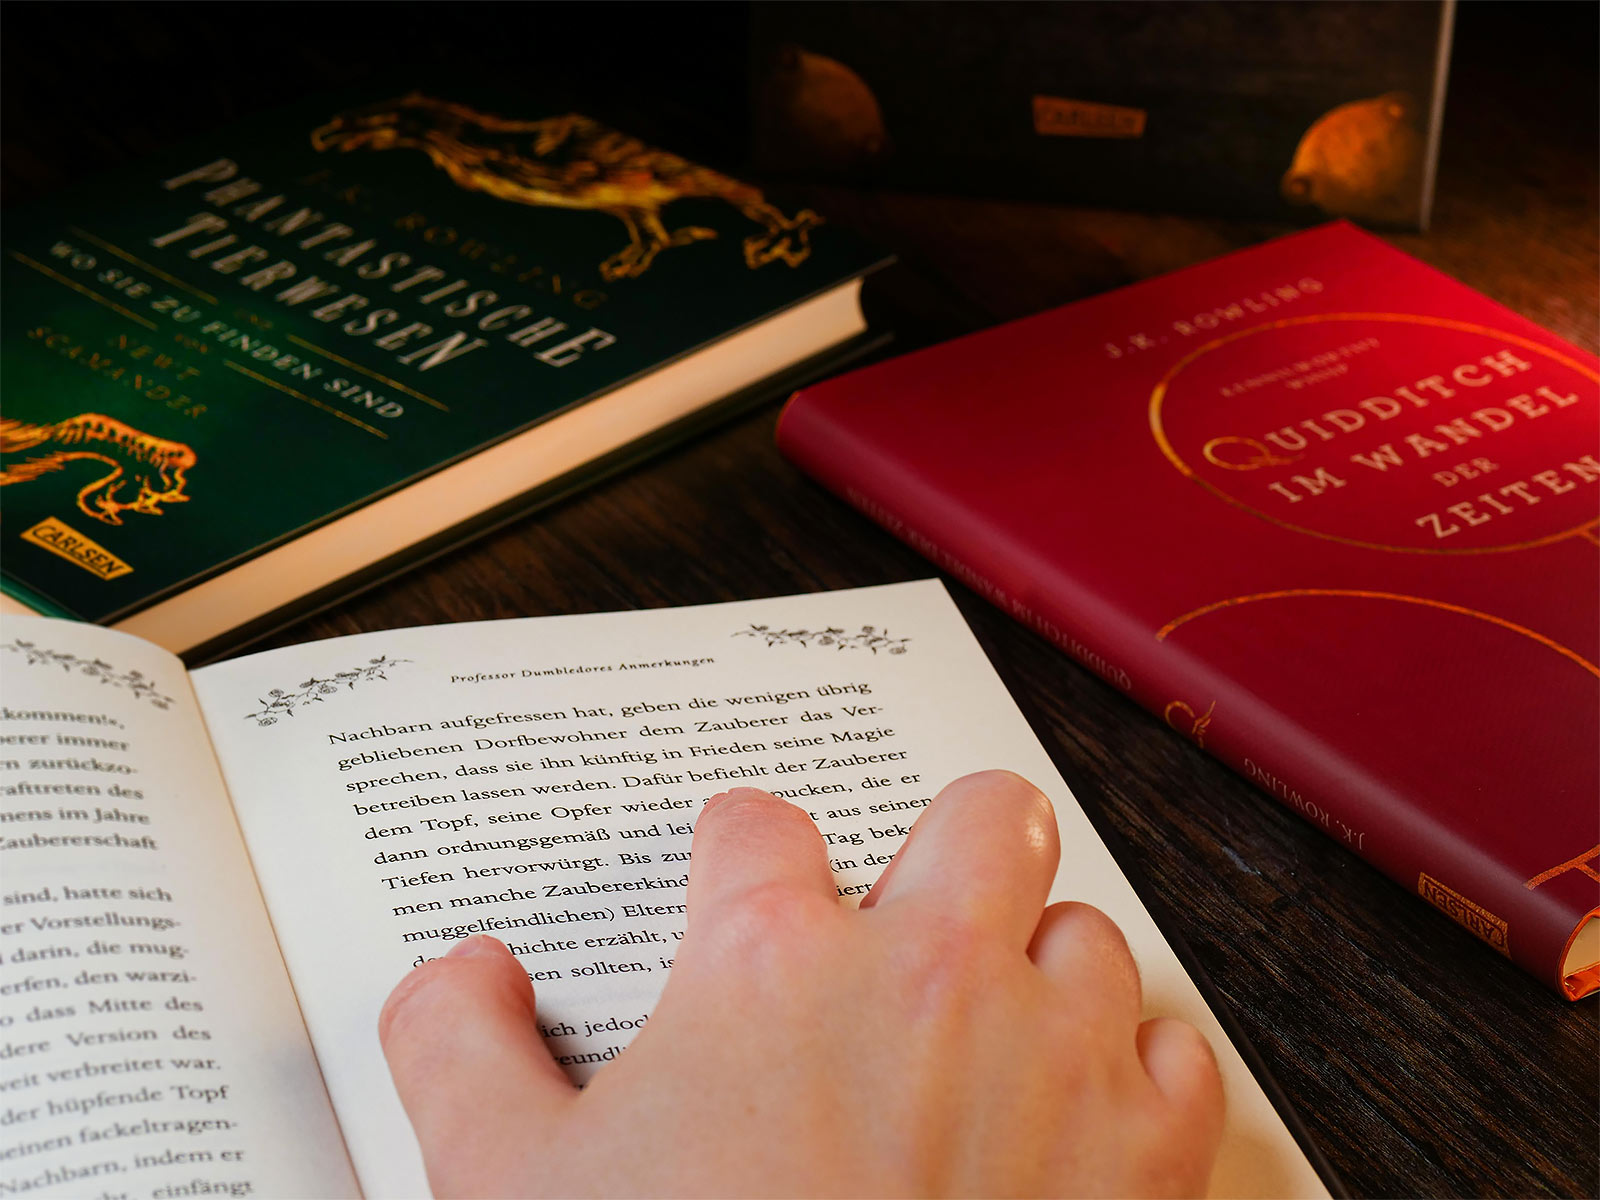 Harry Potter - Les livres scolaires de Poudlard dans un coffret